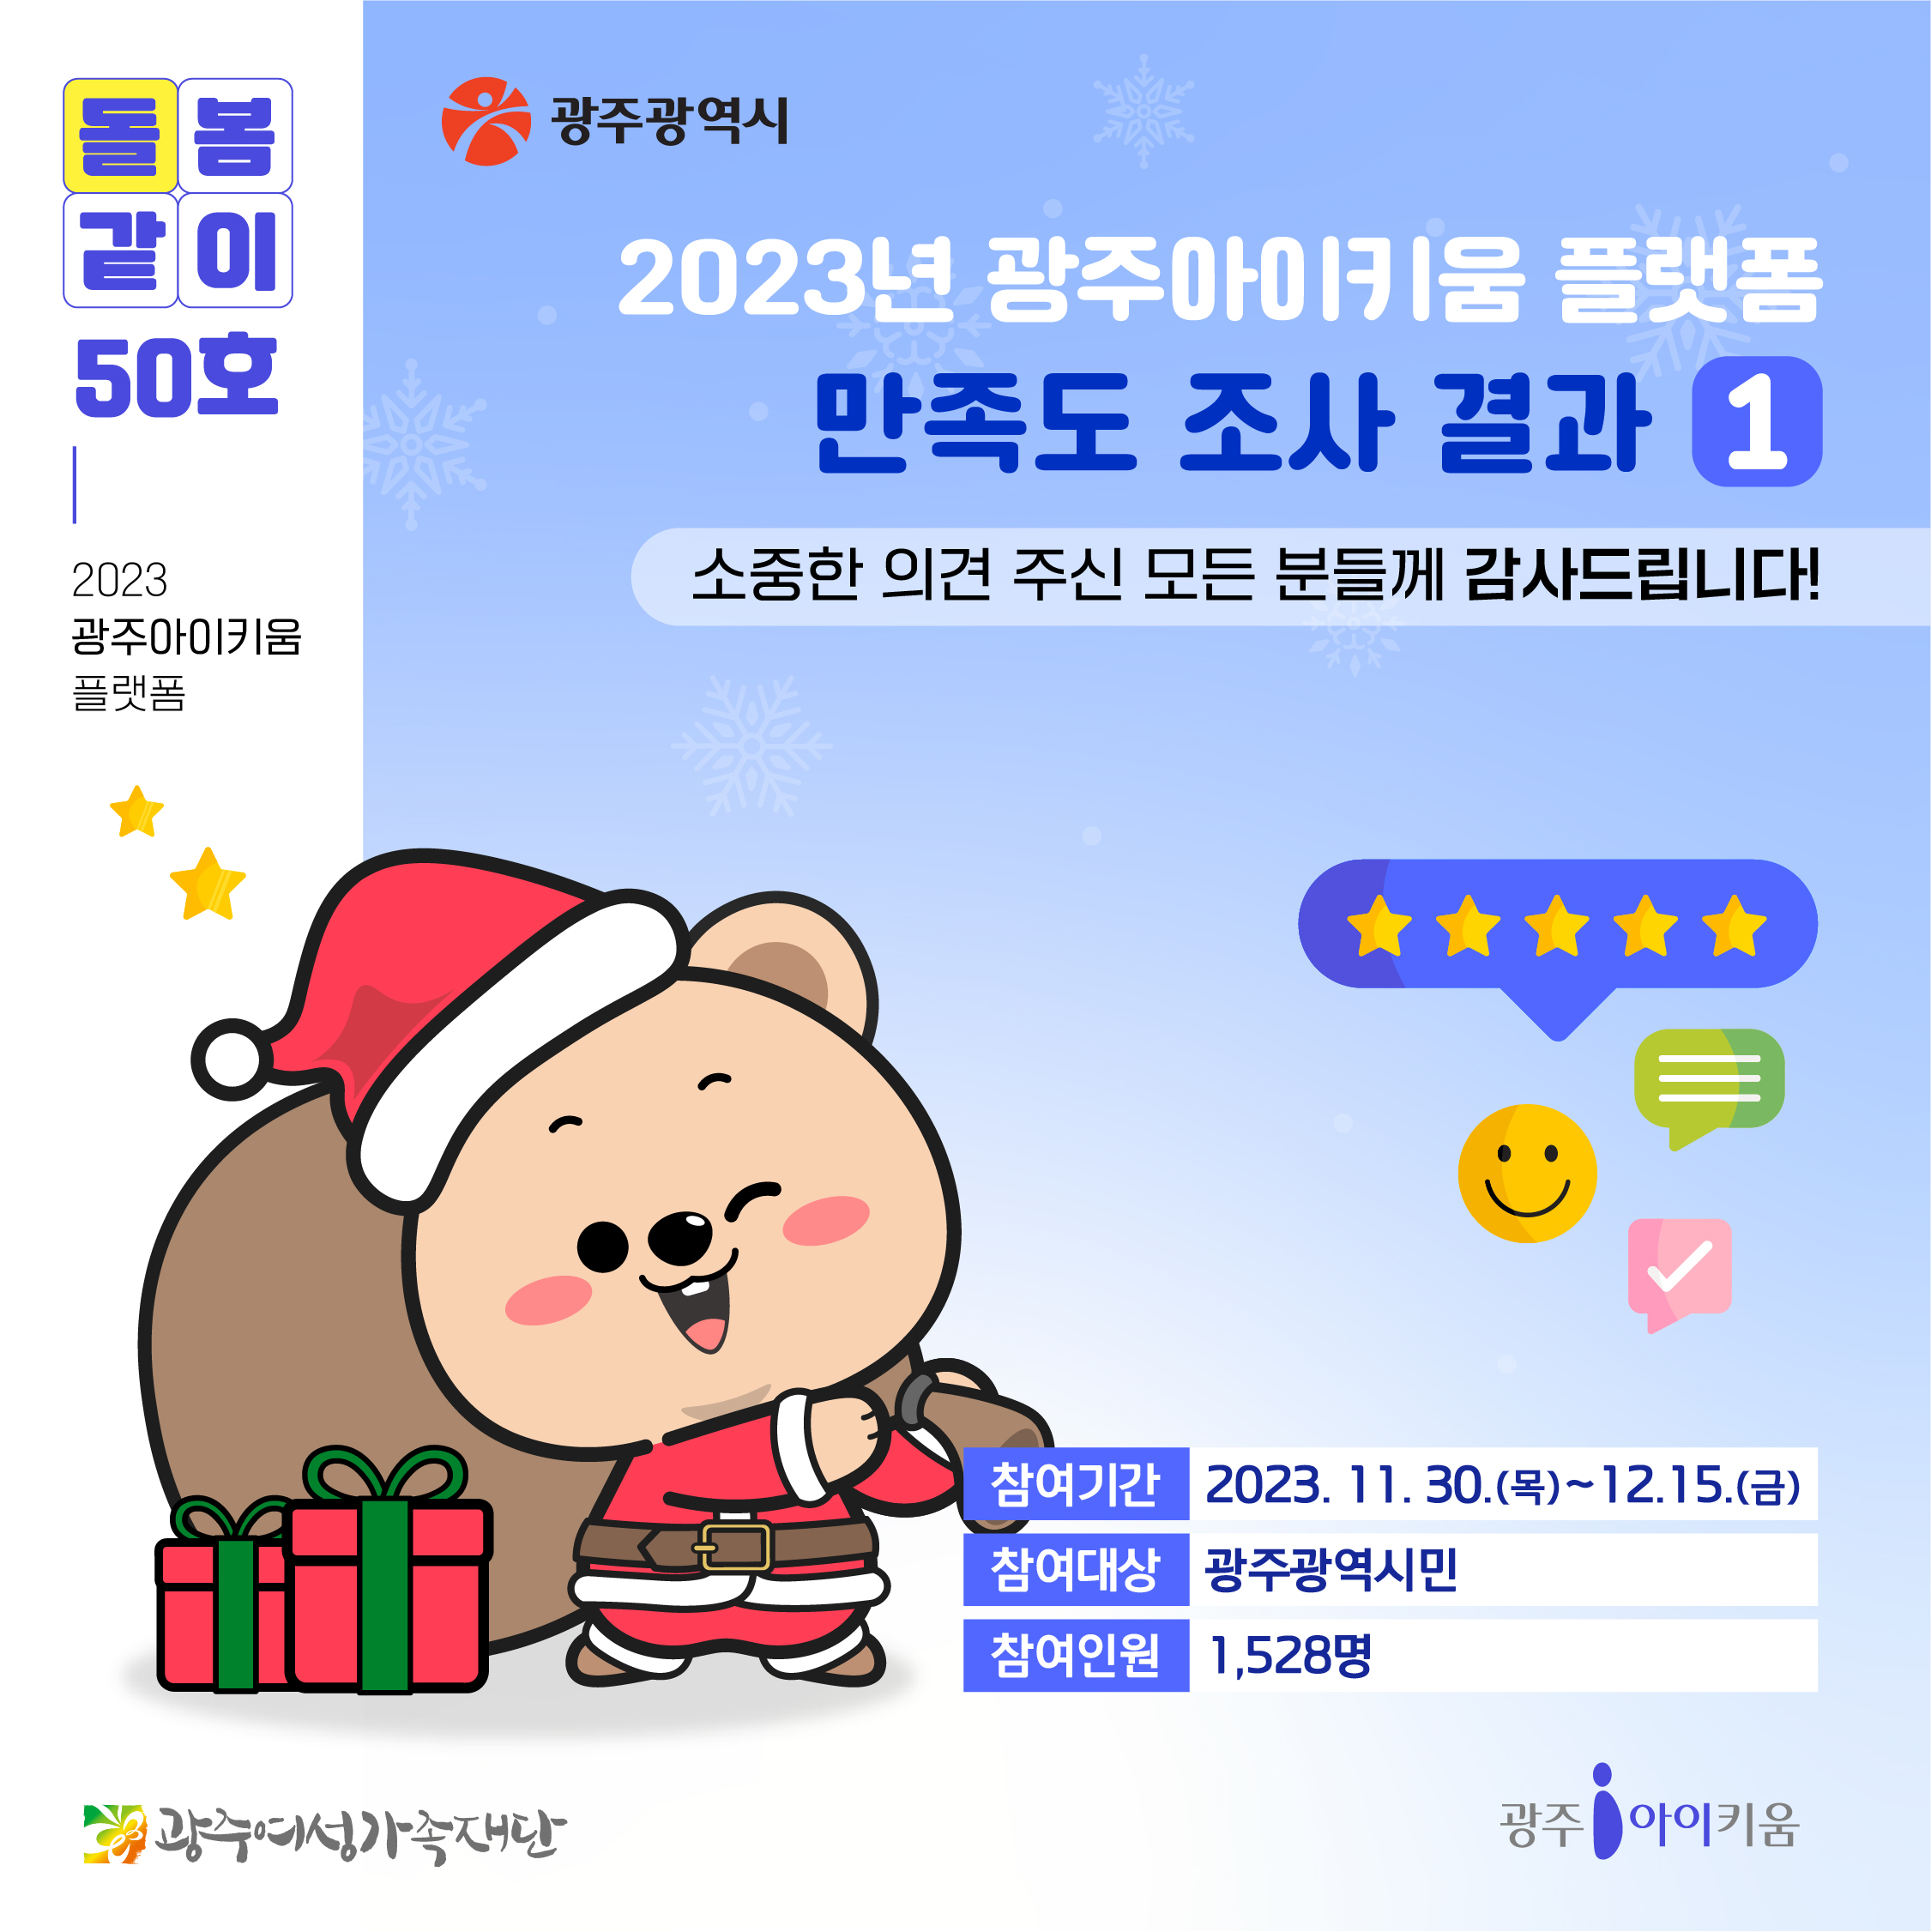 돌봄같이 50호 - 2023년 광주아이키움 플랫폼 만족도 조사 결과 1